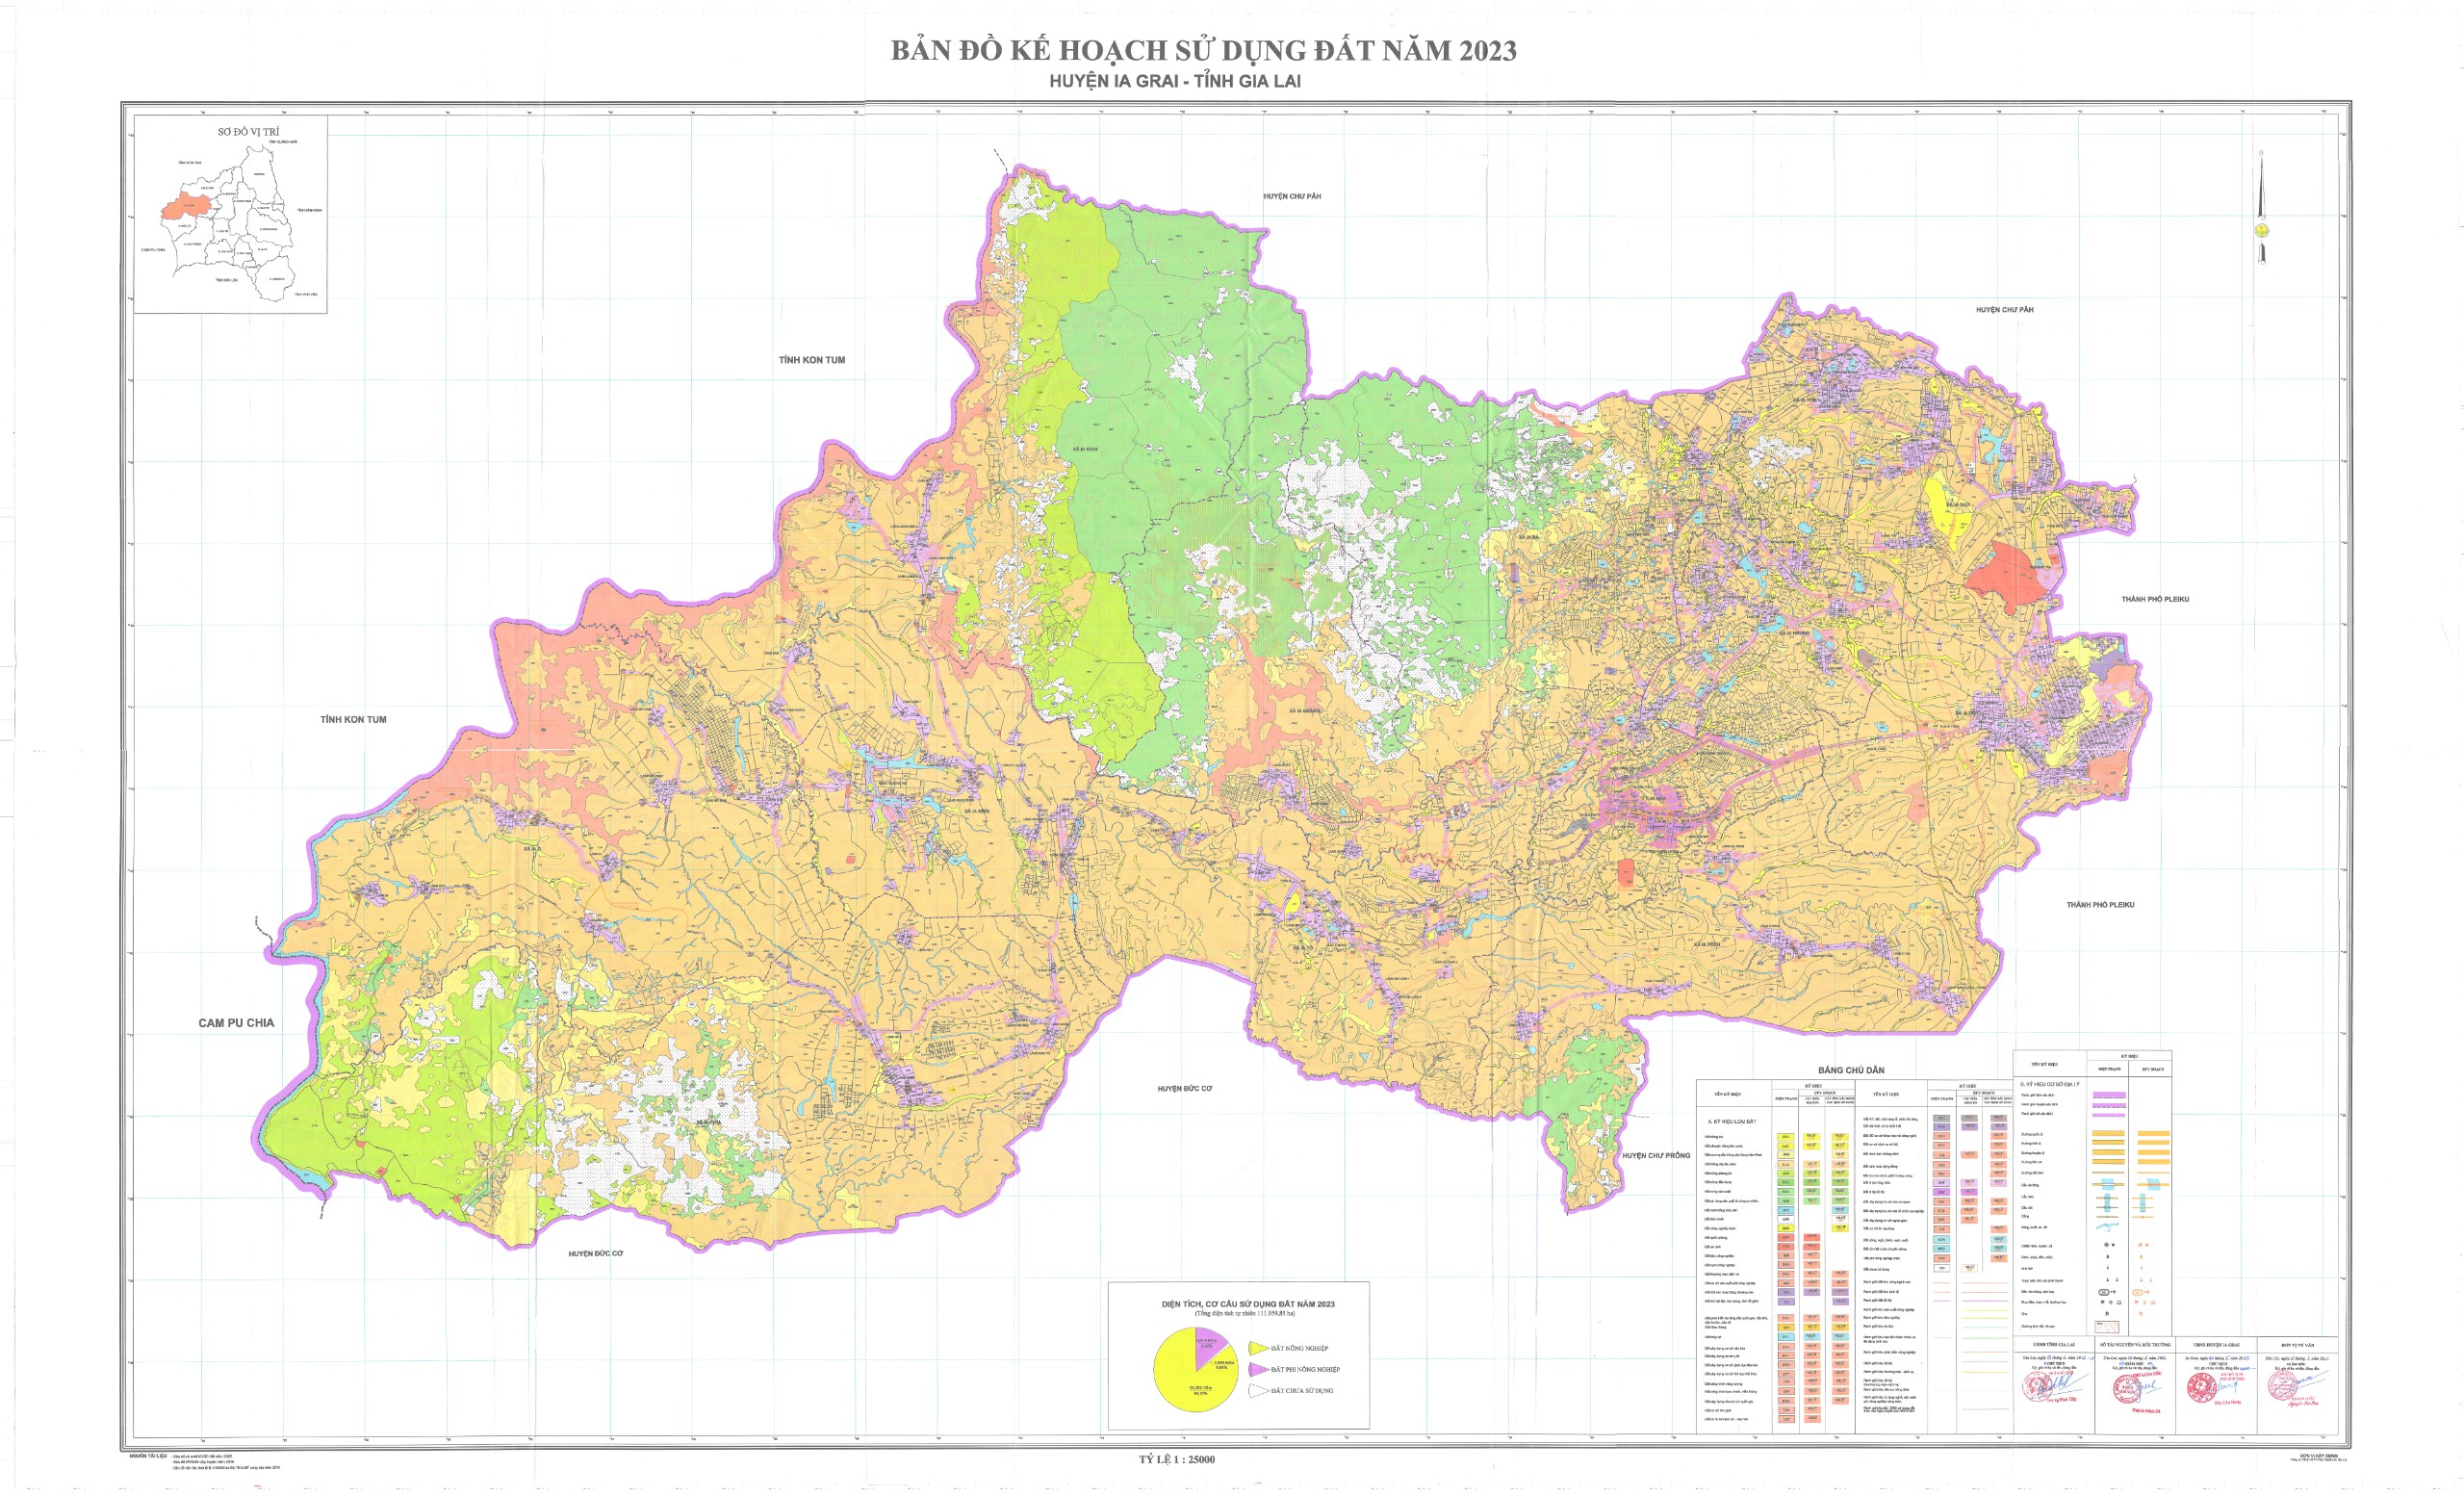 Article THÔNG BÁO Về việc công bố công khai kế hoạch sử dụng đất năm 2023 huyện Ia Grai, tỉnh Gia Lai